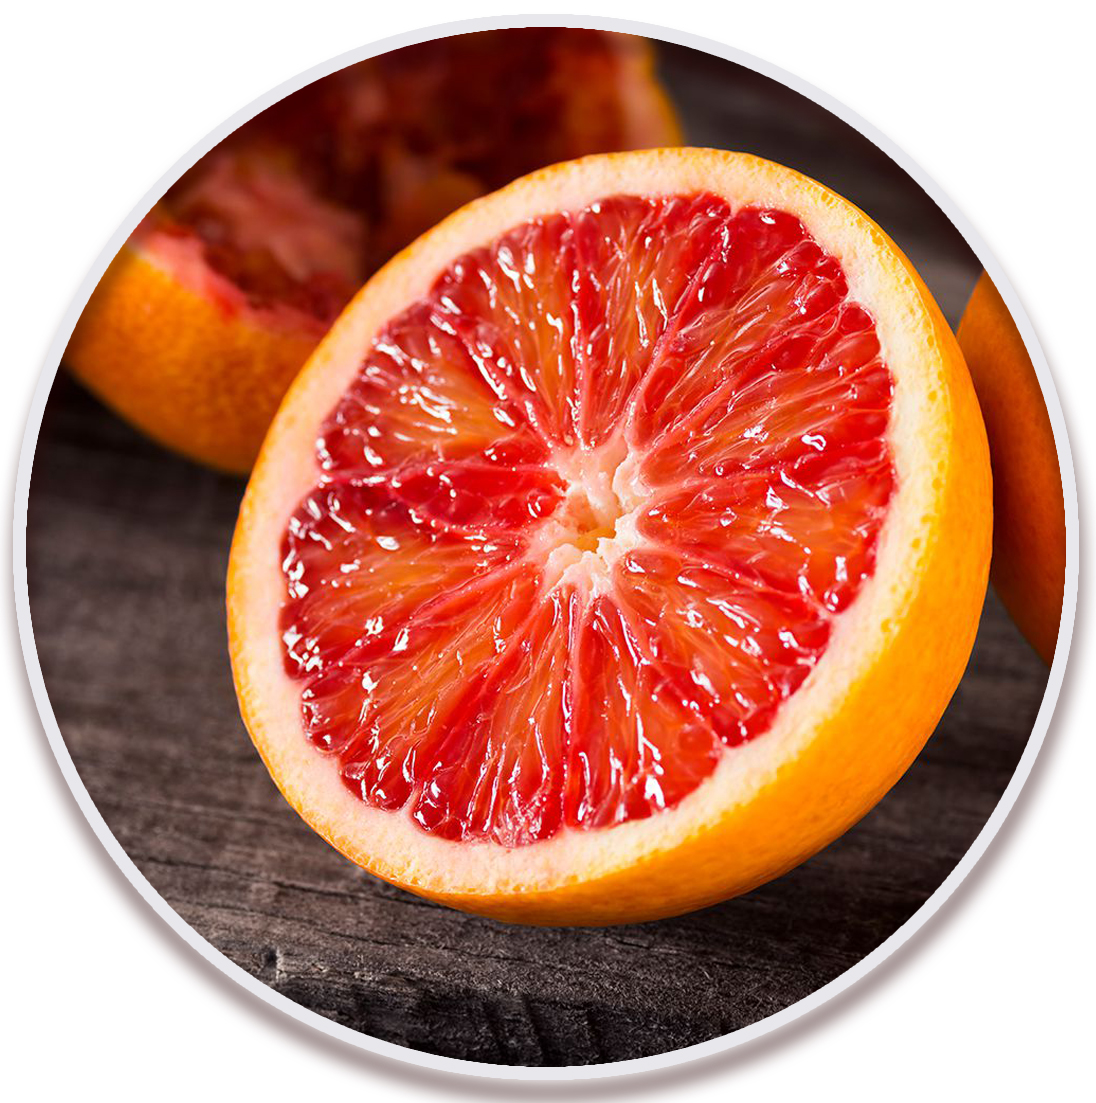 پرتقال خونی مورو (Moro Navel Orange)در نهالستان میرنیا